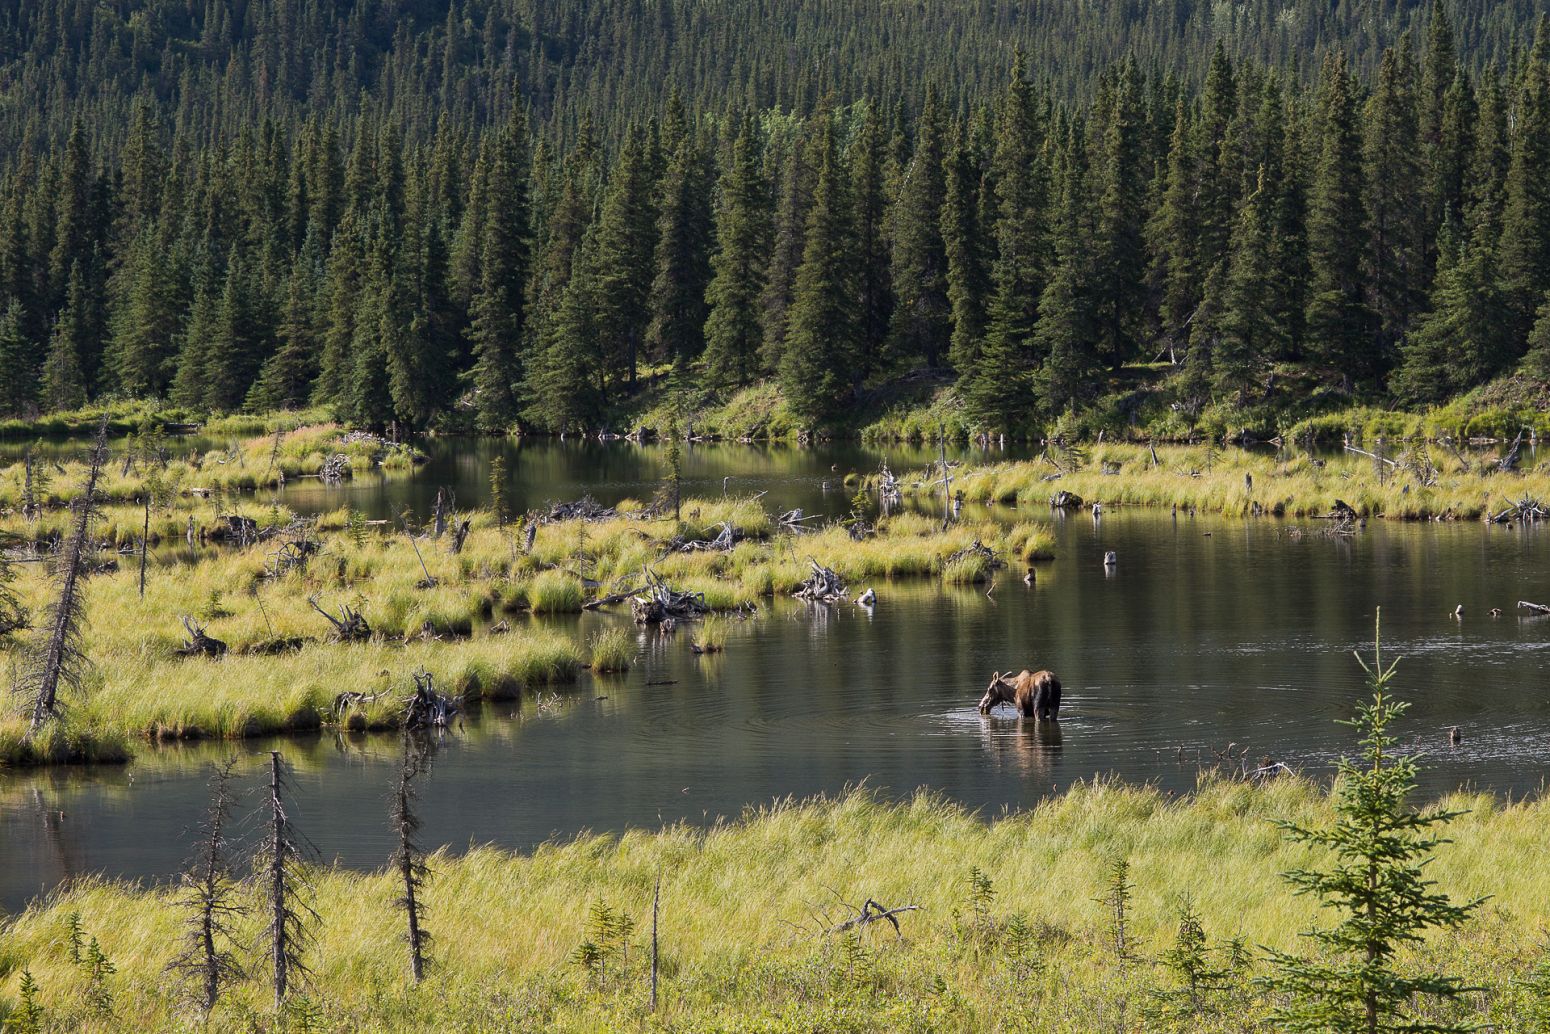 A moose taking a swim in Denali NP, Alaska, USA